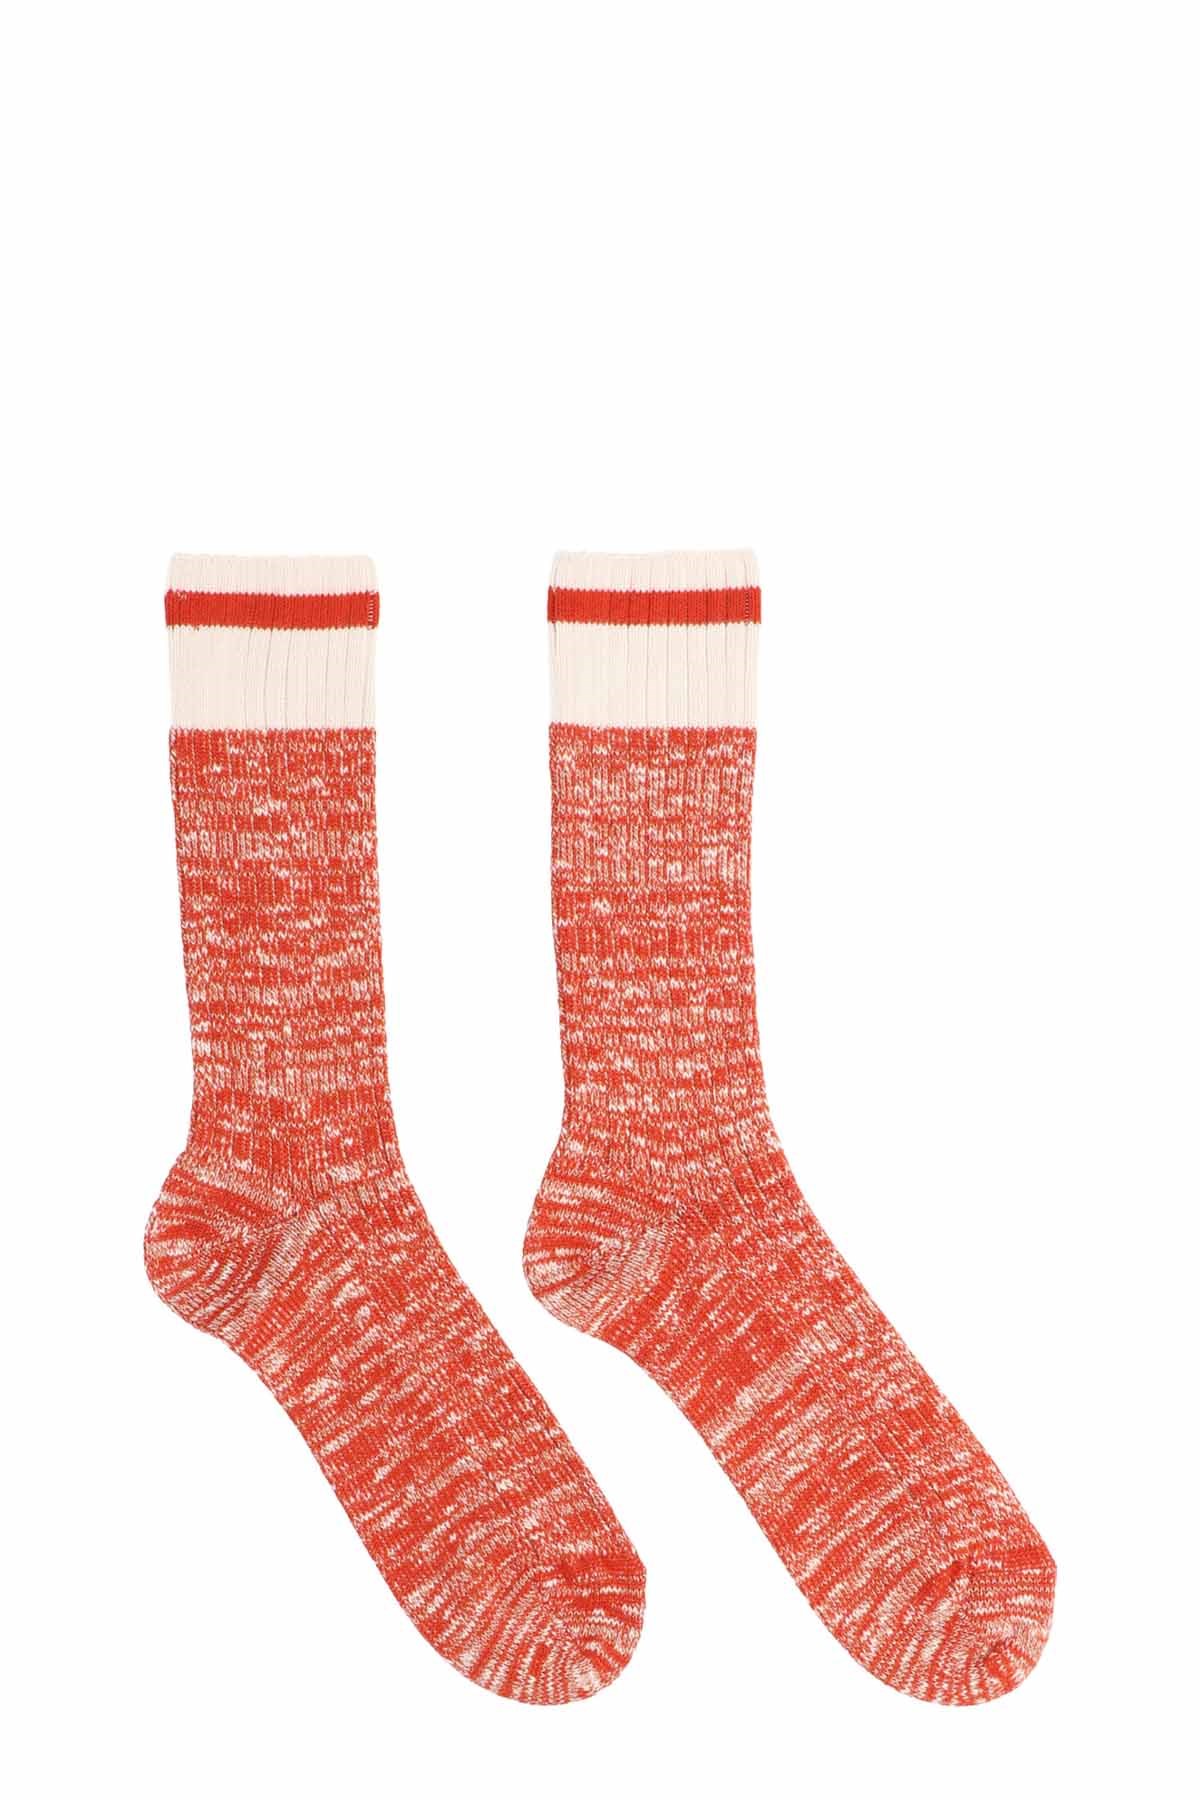 ANT45	 'Firenze' Socks